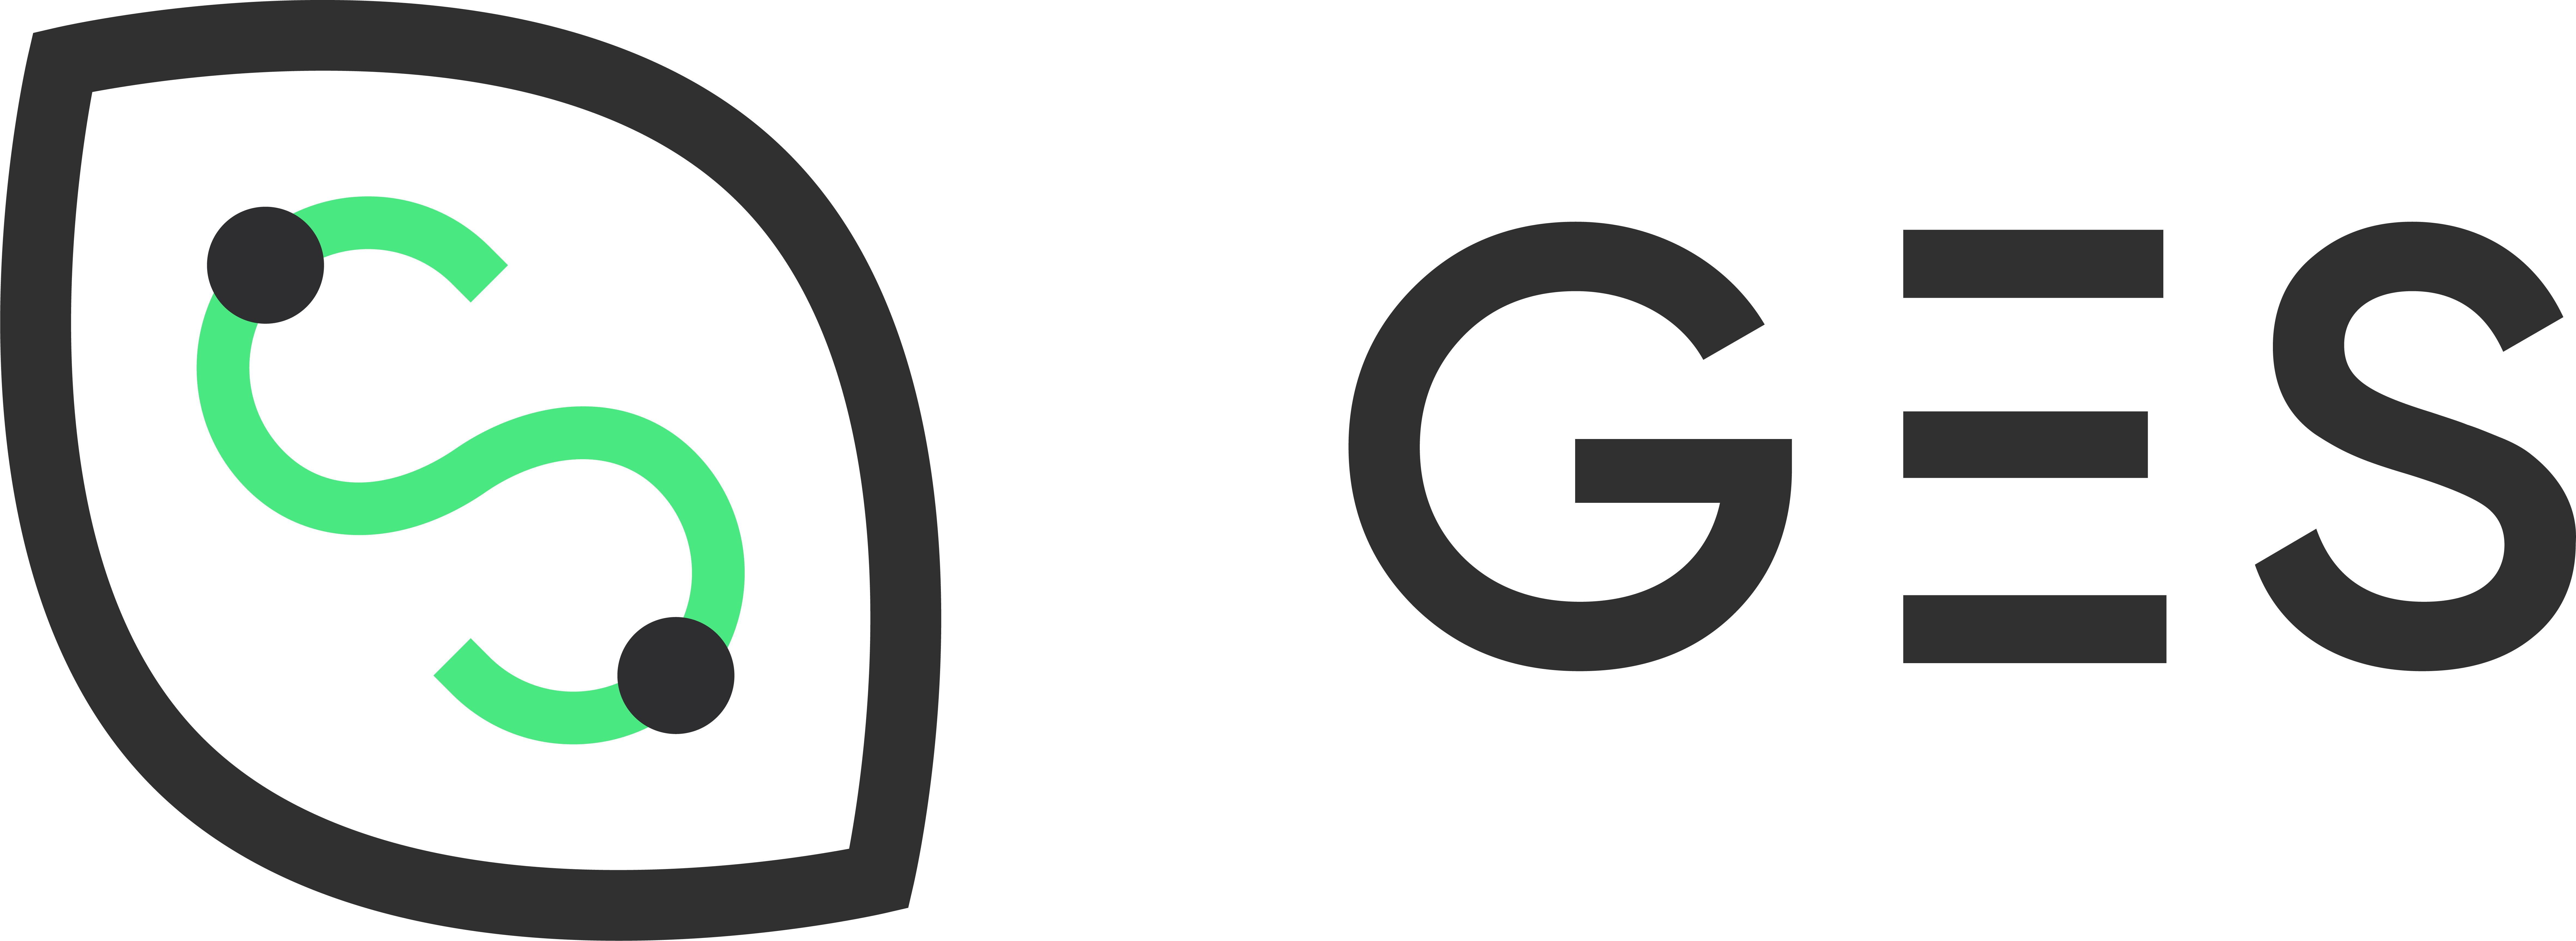 GES _ Logo positivo